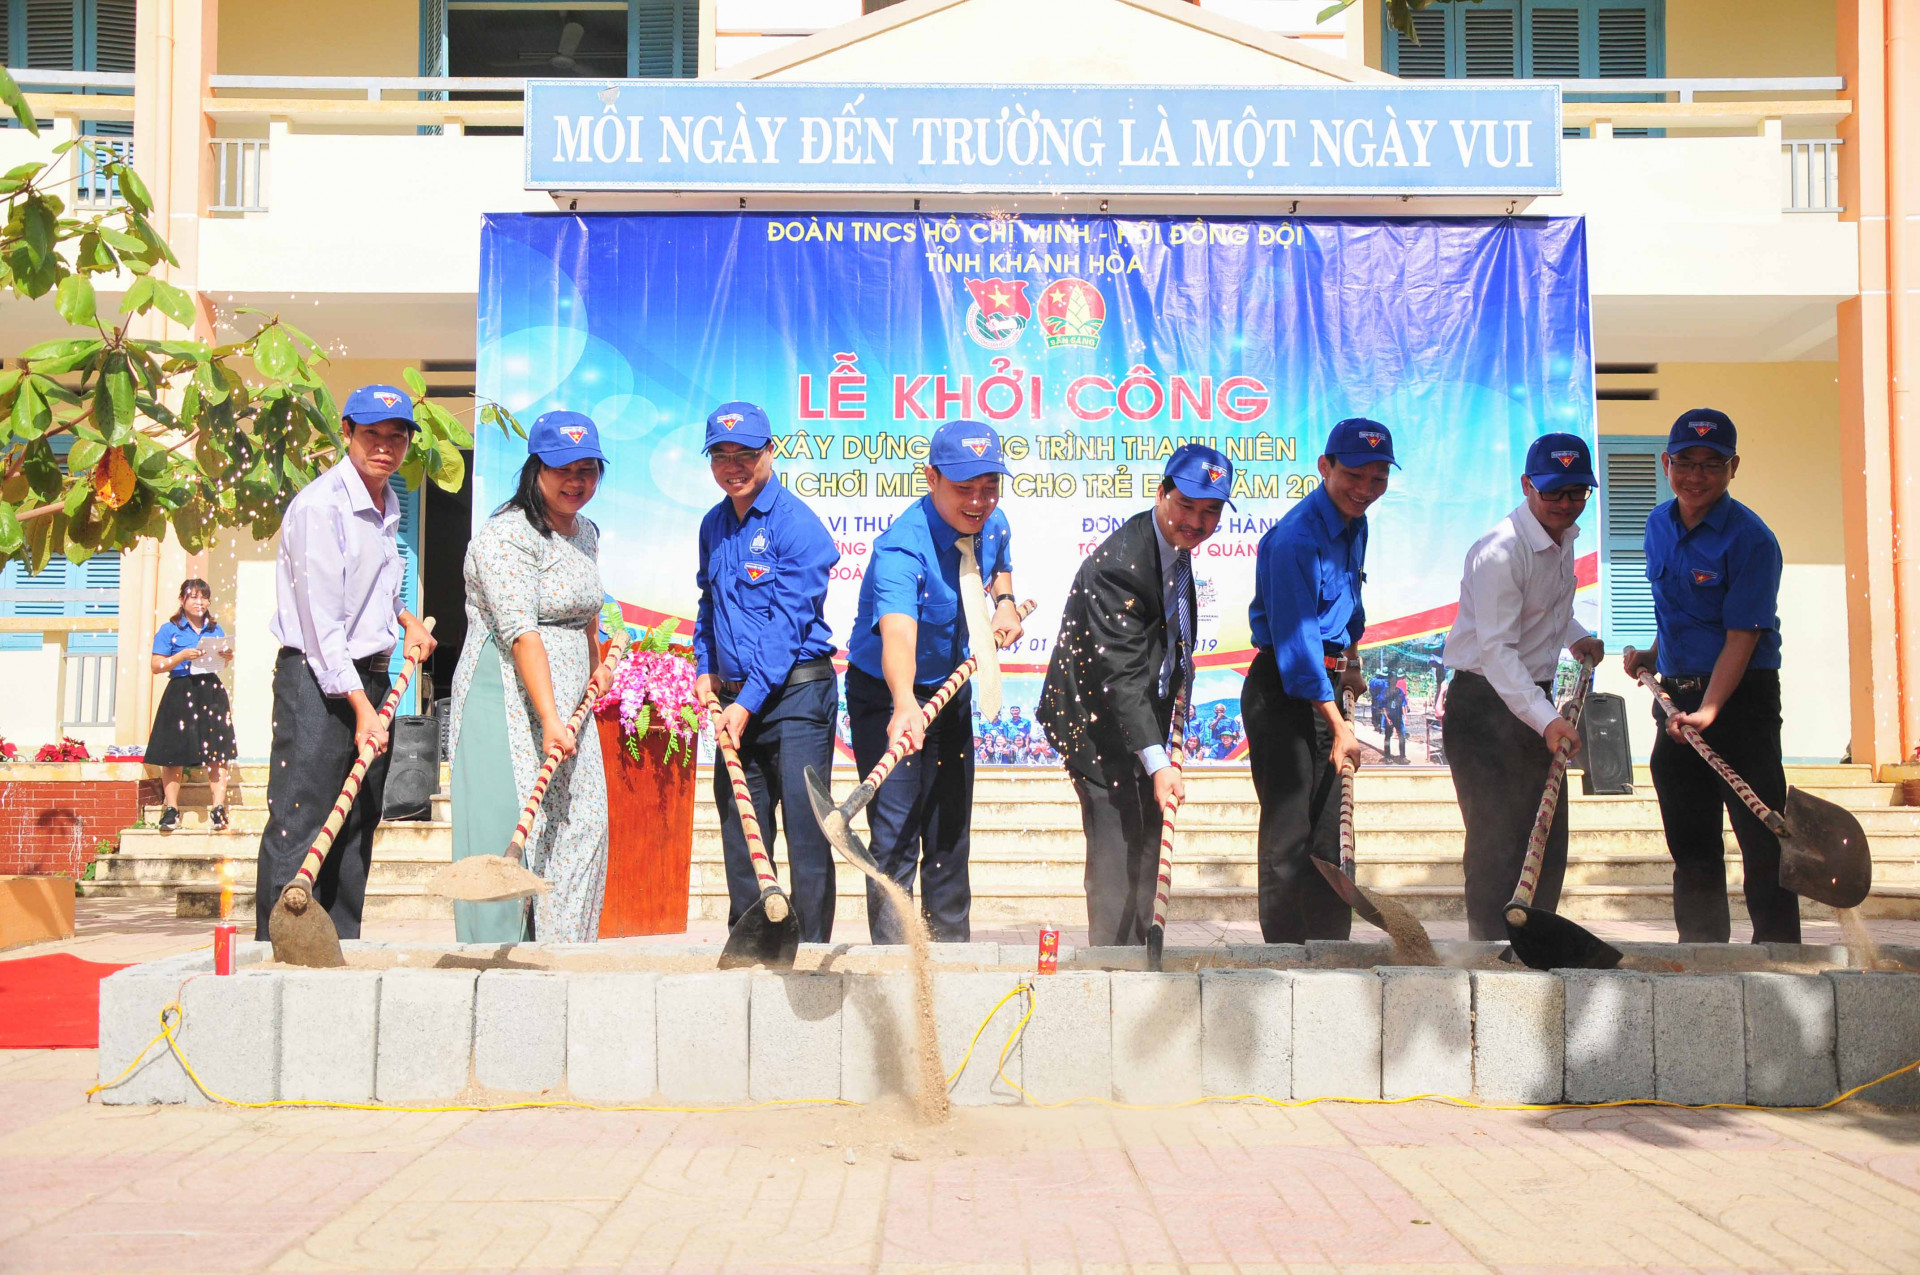 Tỉnh đoàn cùng Trường Đại học Nha Trang khởi công công trình Sân chơi miễn phí cho trẻ em tại Trường Tiểu học Cam Thịnh Tây 2 